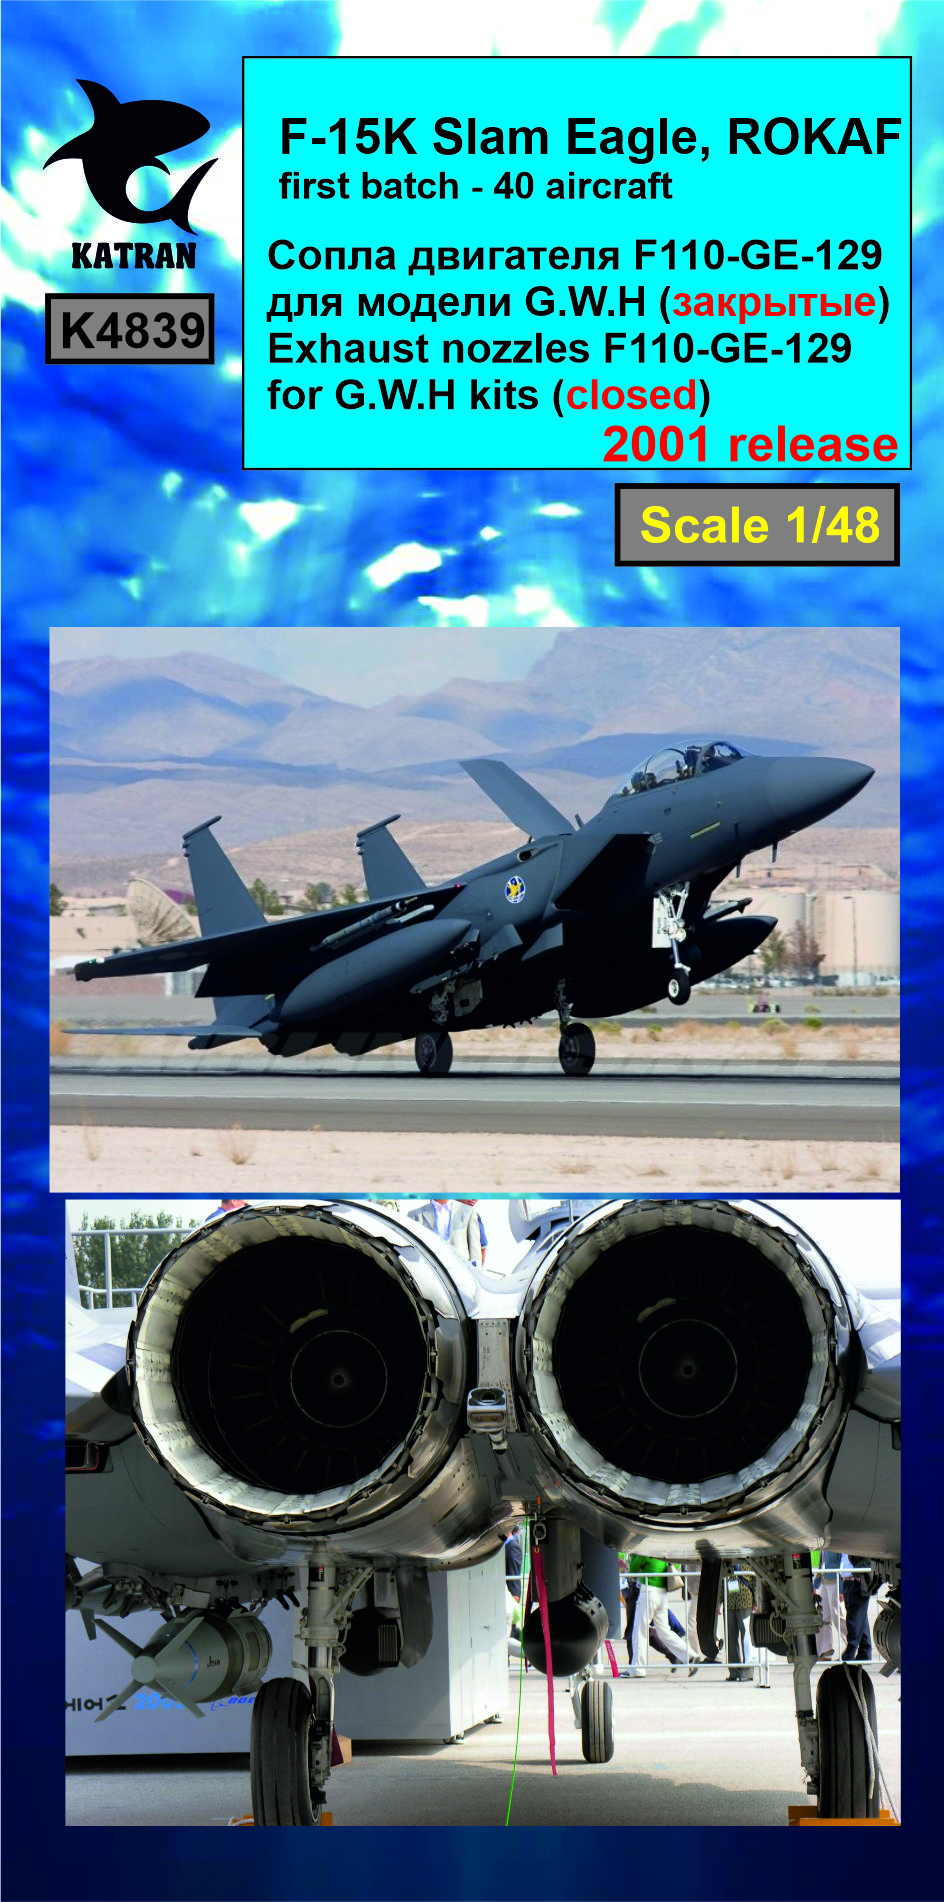 Дополнения из смолы 1/48 F-15K Slam Eagle сопла двигателя (closed) F-110-GE-129 (Katran) 